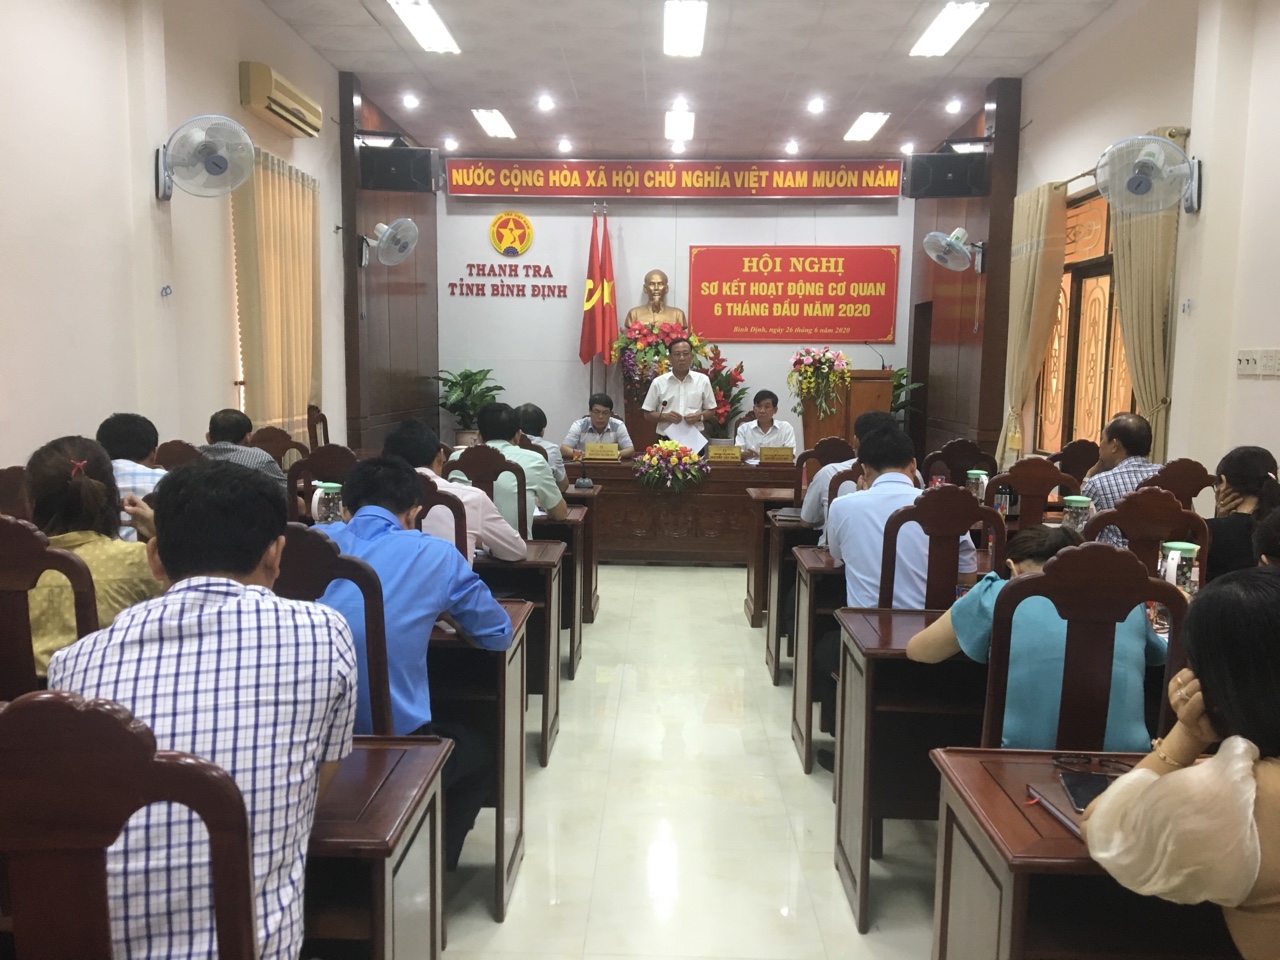 Một Hội nghị của Thanh tra tỉnh Bình Định